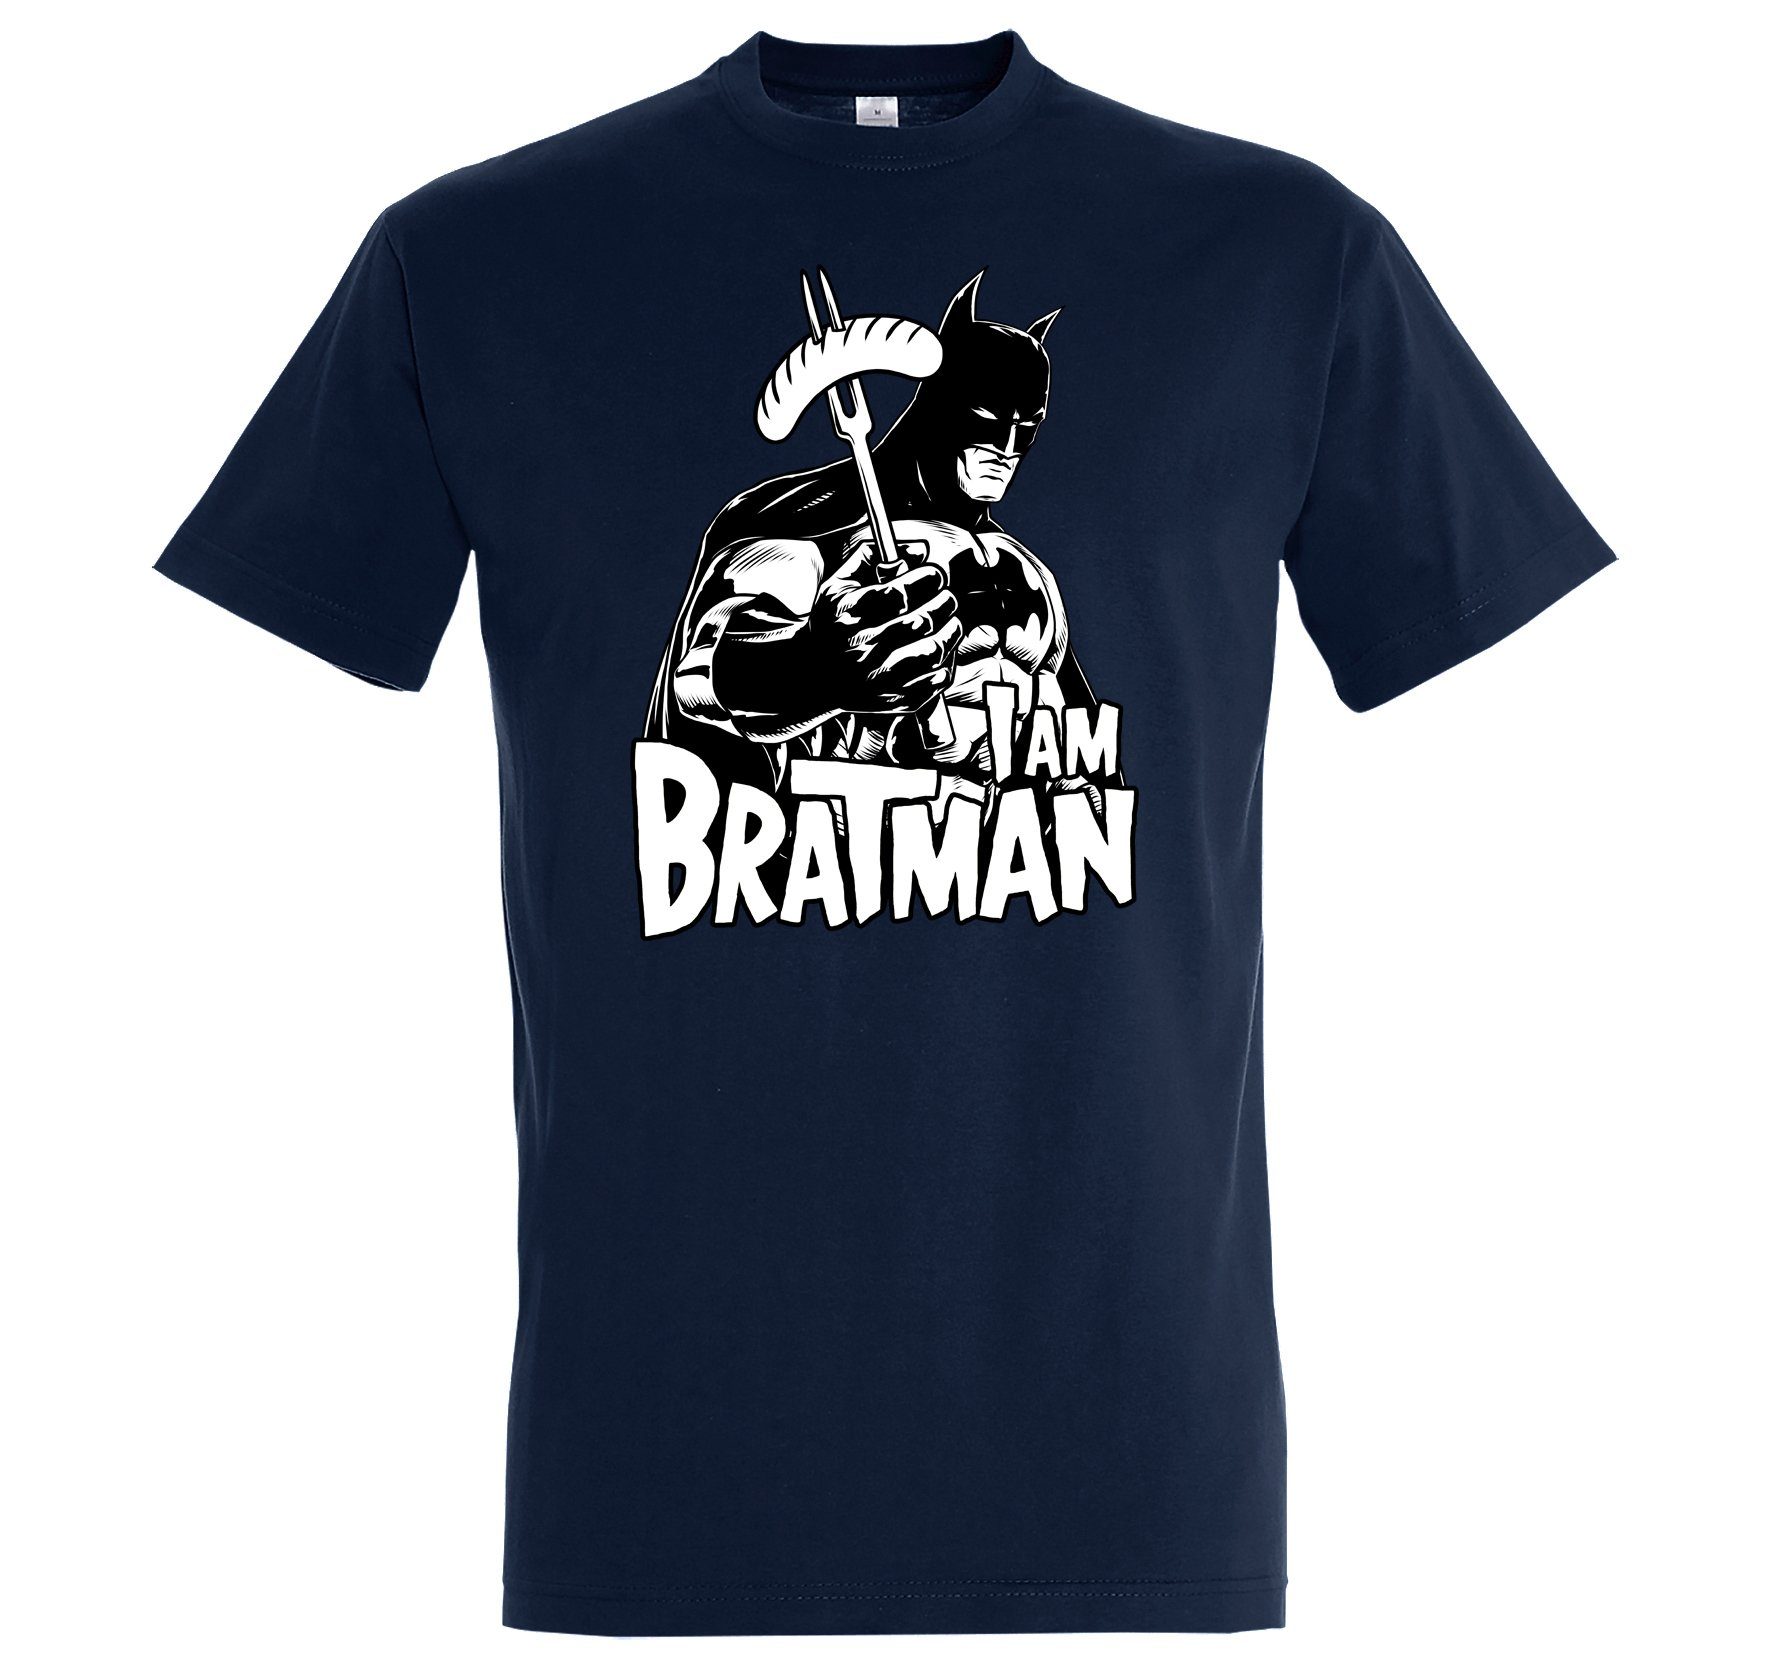 Youth Designz T-Shirt Herren lustigem Spruch Navyblau Bratman T-Shirt mit